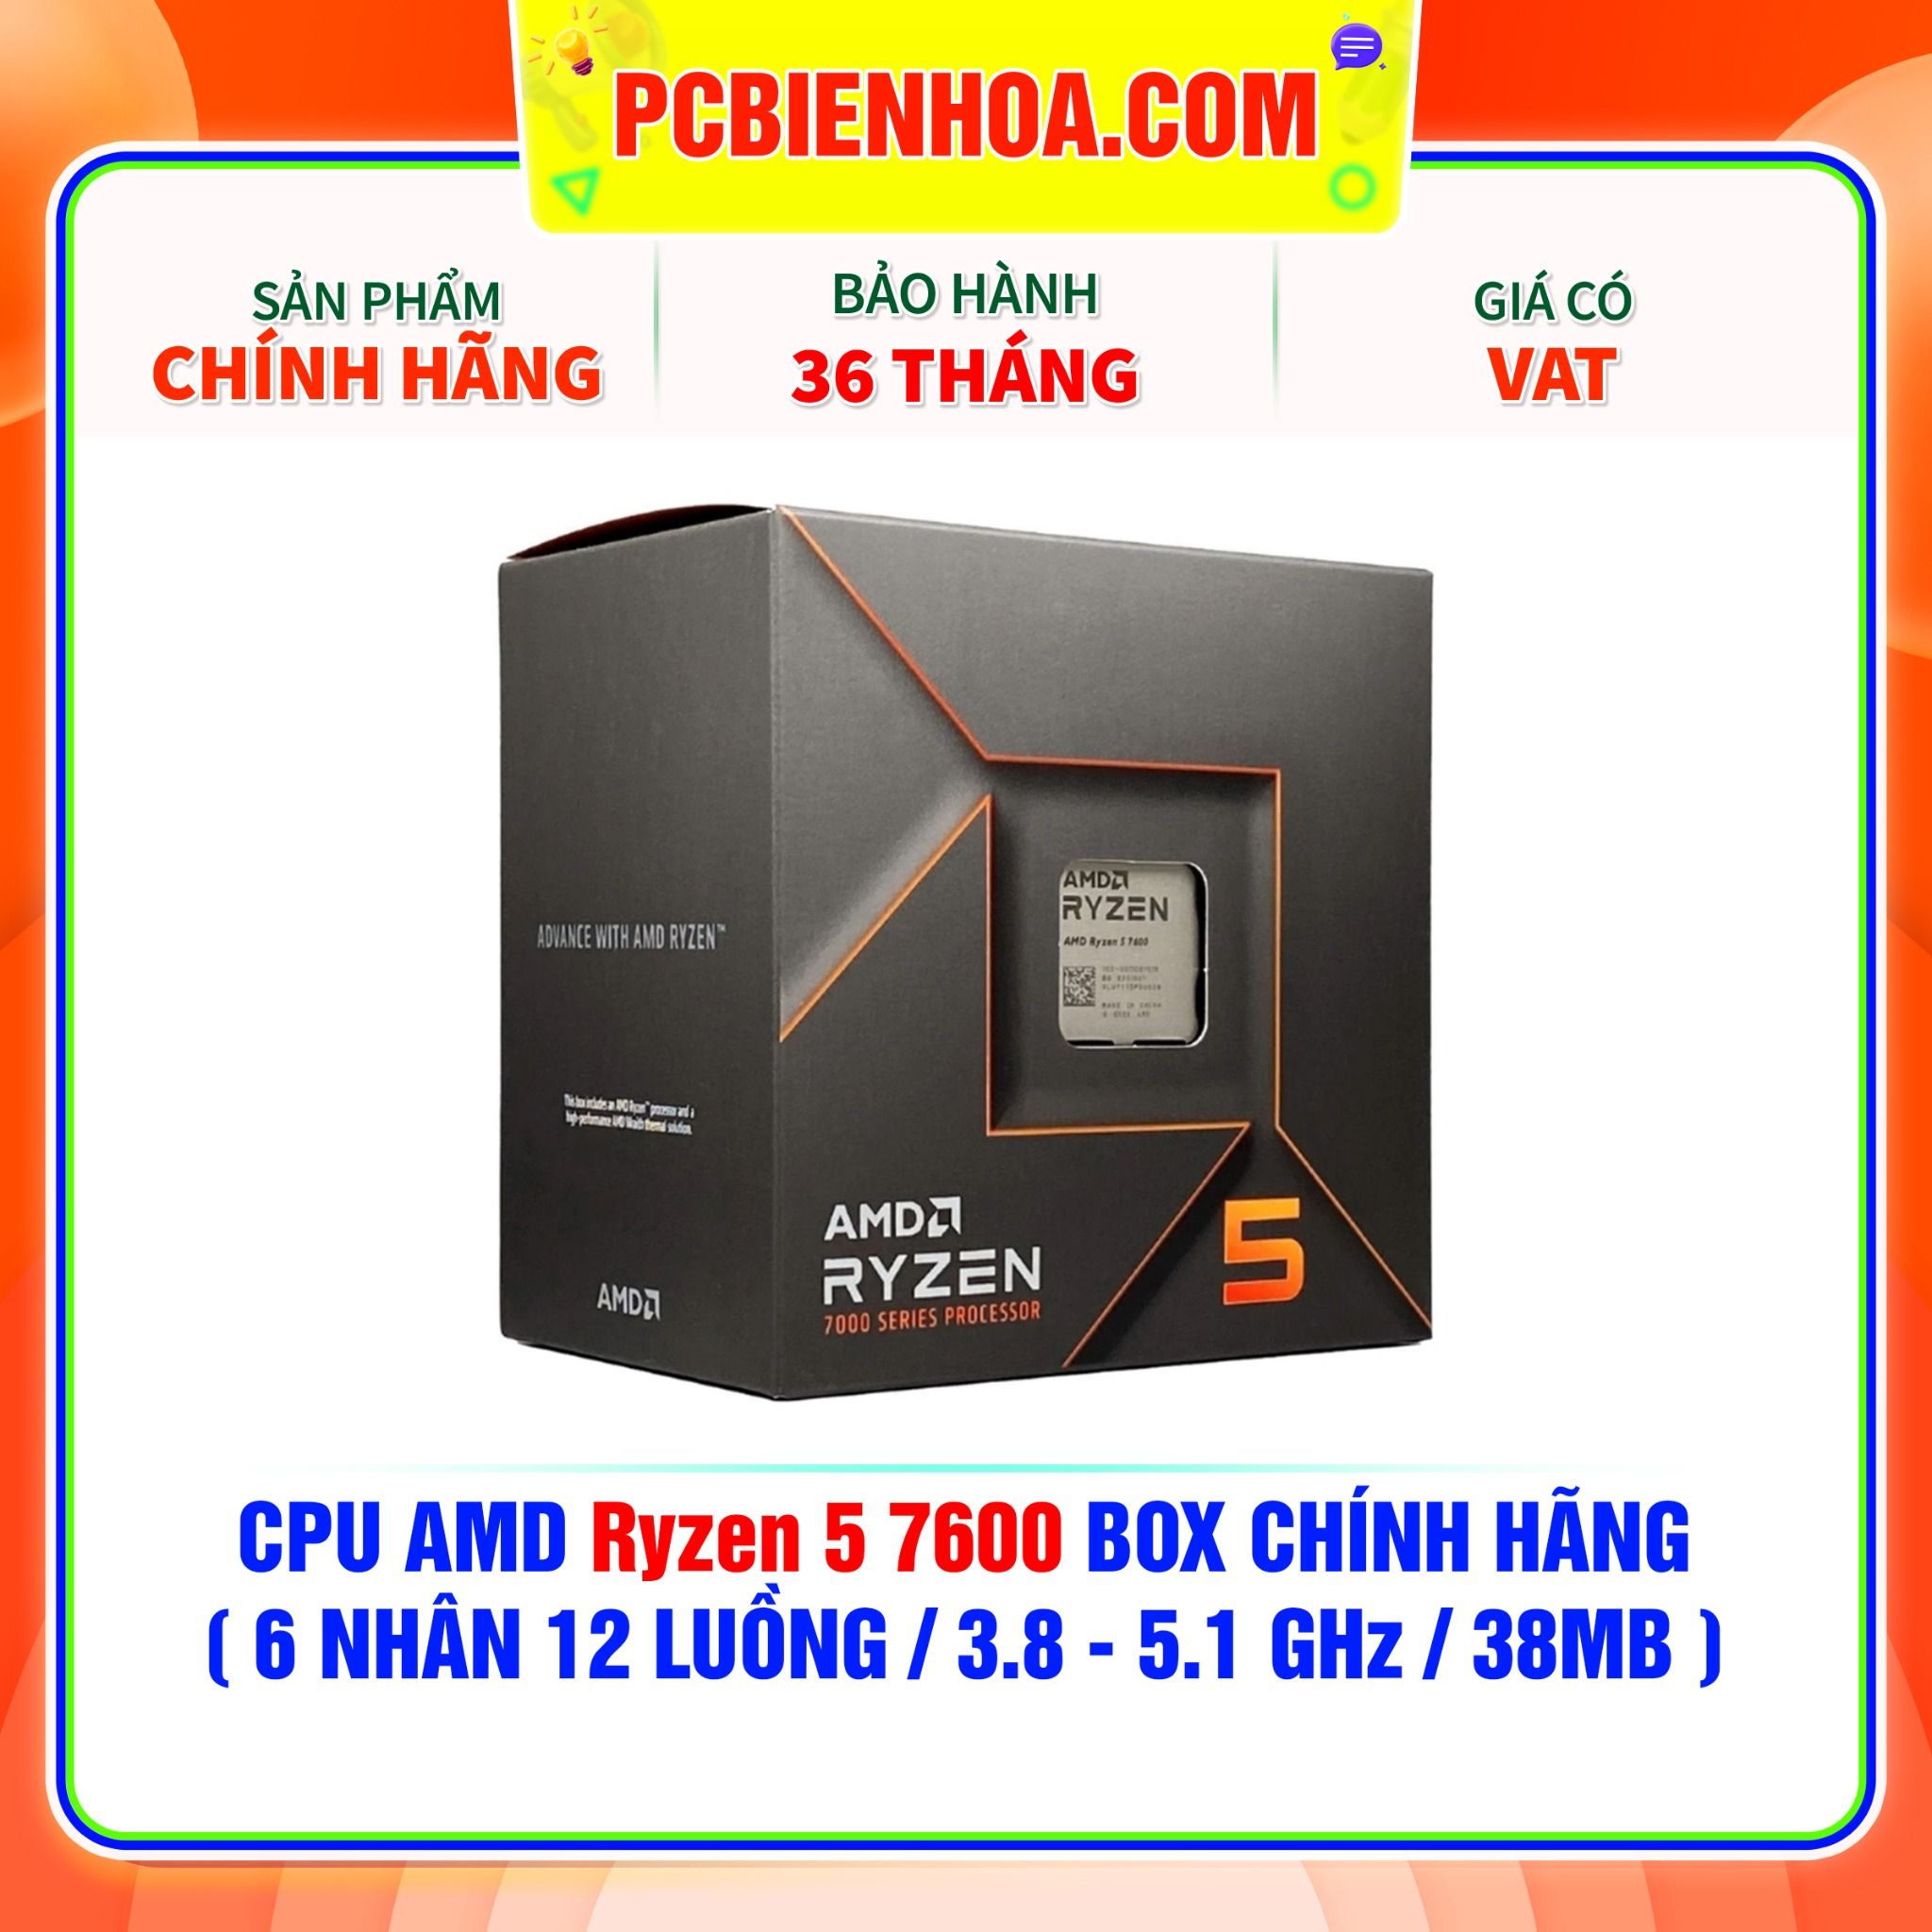  CPU AMD Ryzen 5 7600 BOX CHÍNH HÃNG ( 6 NHÂN 12 LUỒNG / 3.8 - 5.1 GHz / 38MB ) 